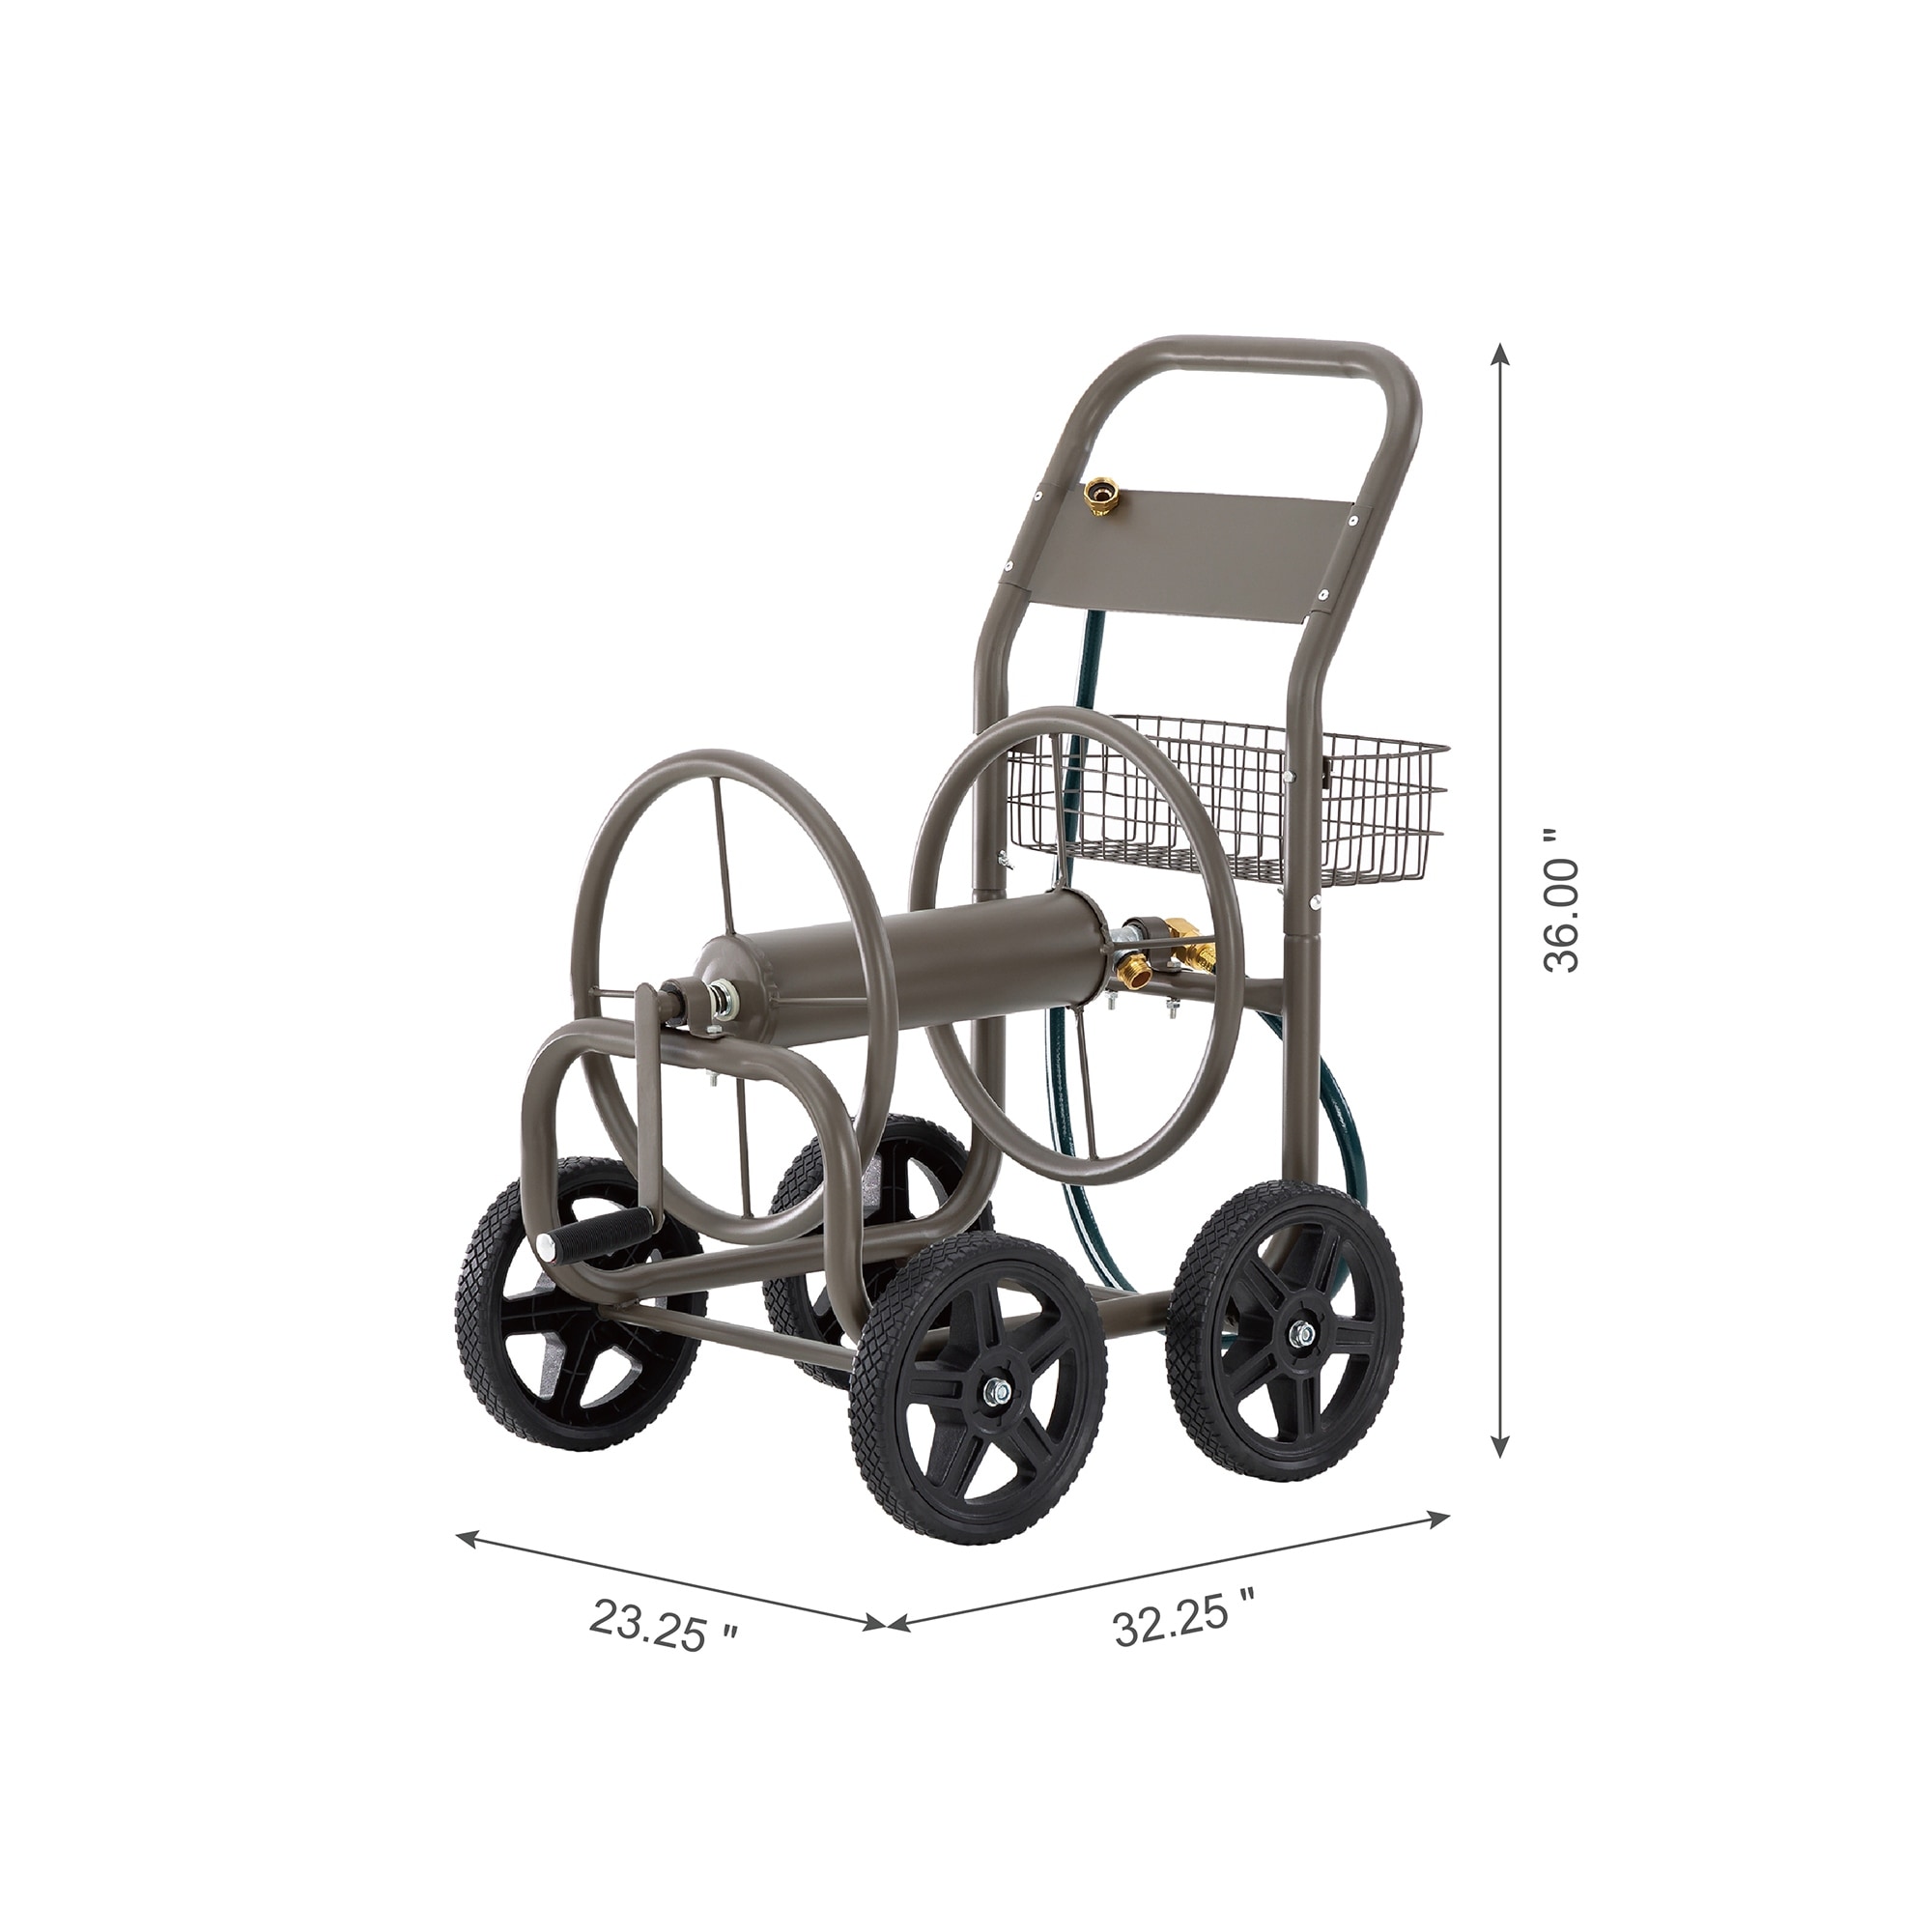 Glitzhome 36 4-Wheel Steel Garden Hose Reel Cart w/ Basket 